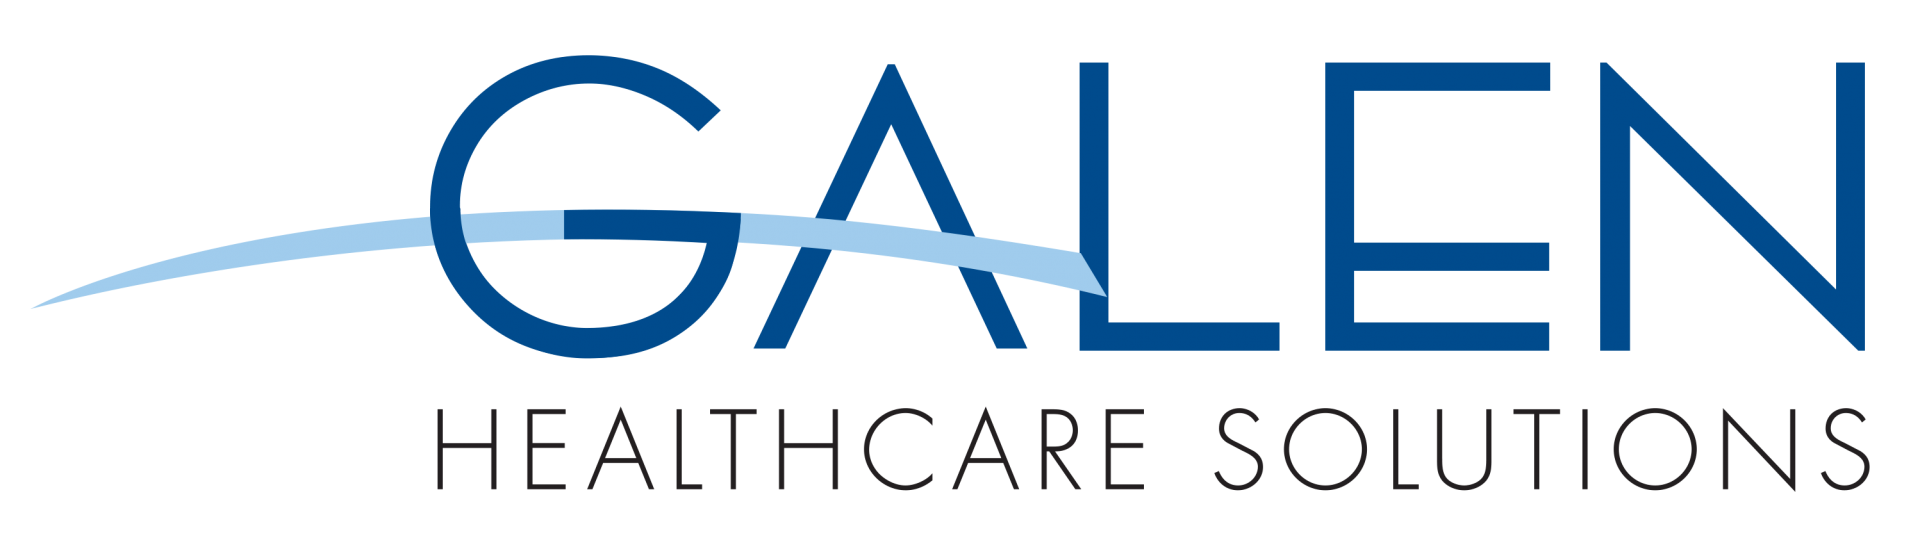 Galen-logo-1